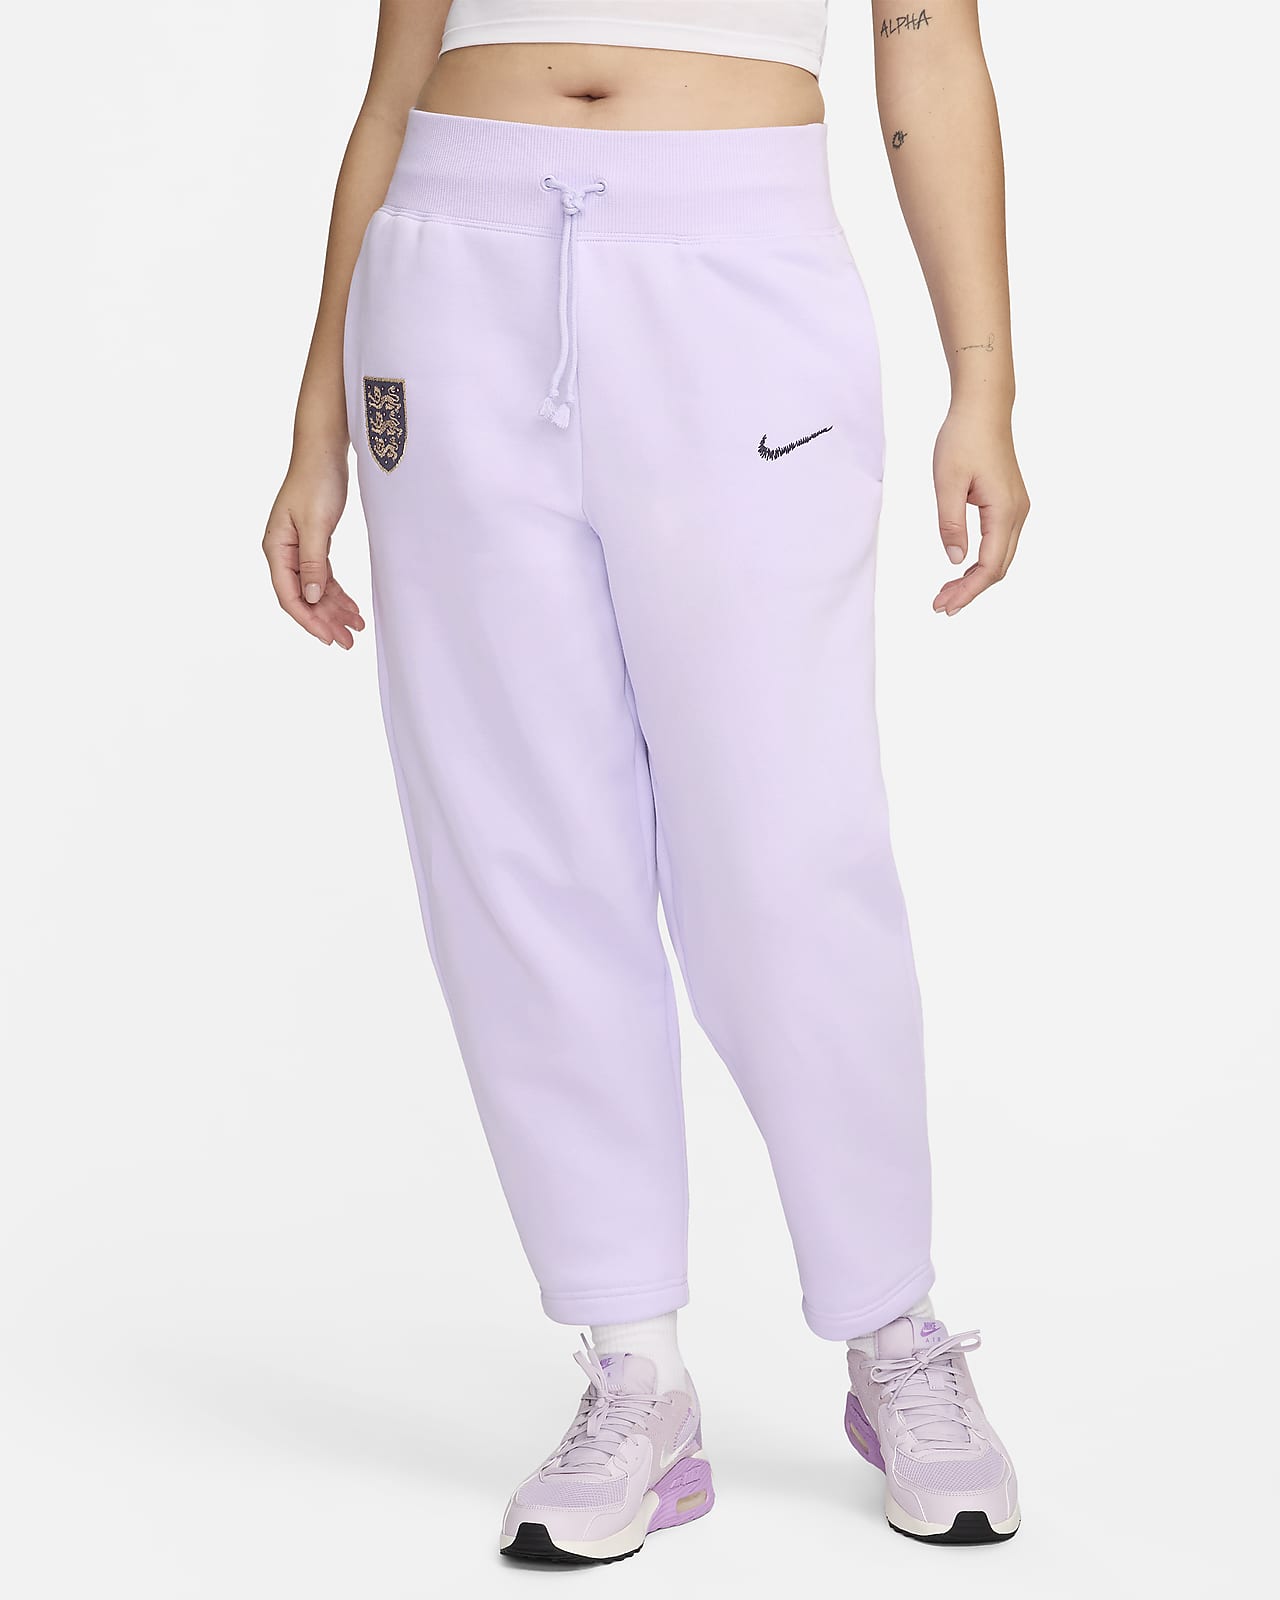 Γυναικείο ποδοσφαιρικό ψηλόμεσο παντελόνι Nike με στρογγυλεμένη γραμμή Αγγλία Phoenix Fleece